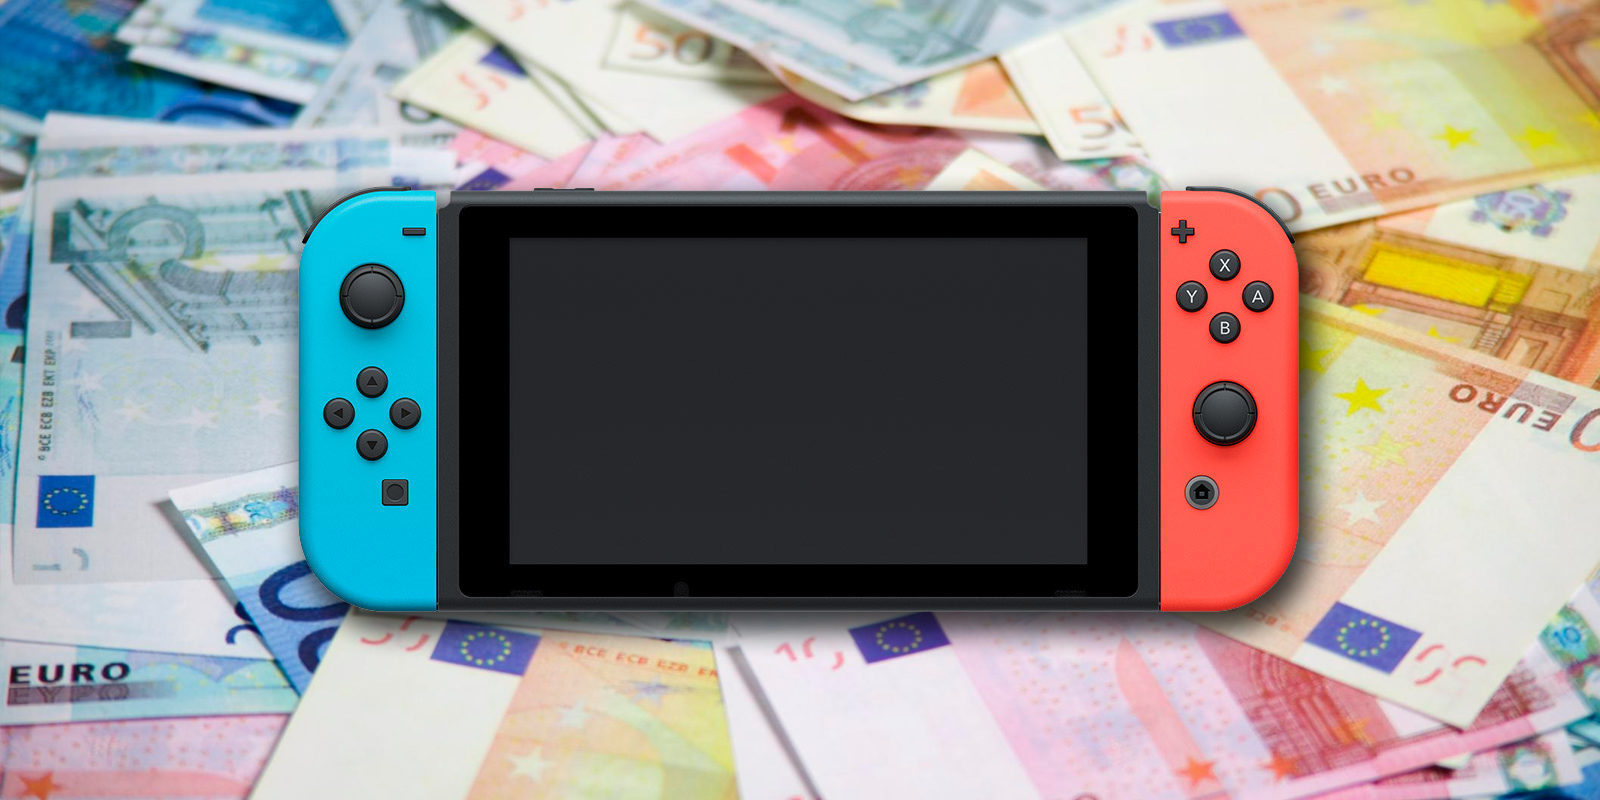 Empleados roban varias 'Nintendo Switch' de una distribuidora americana